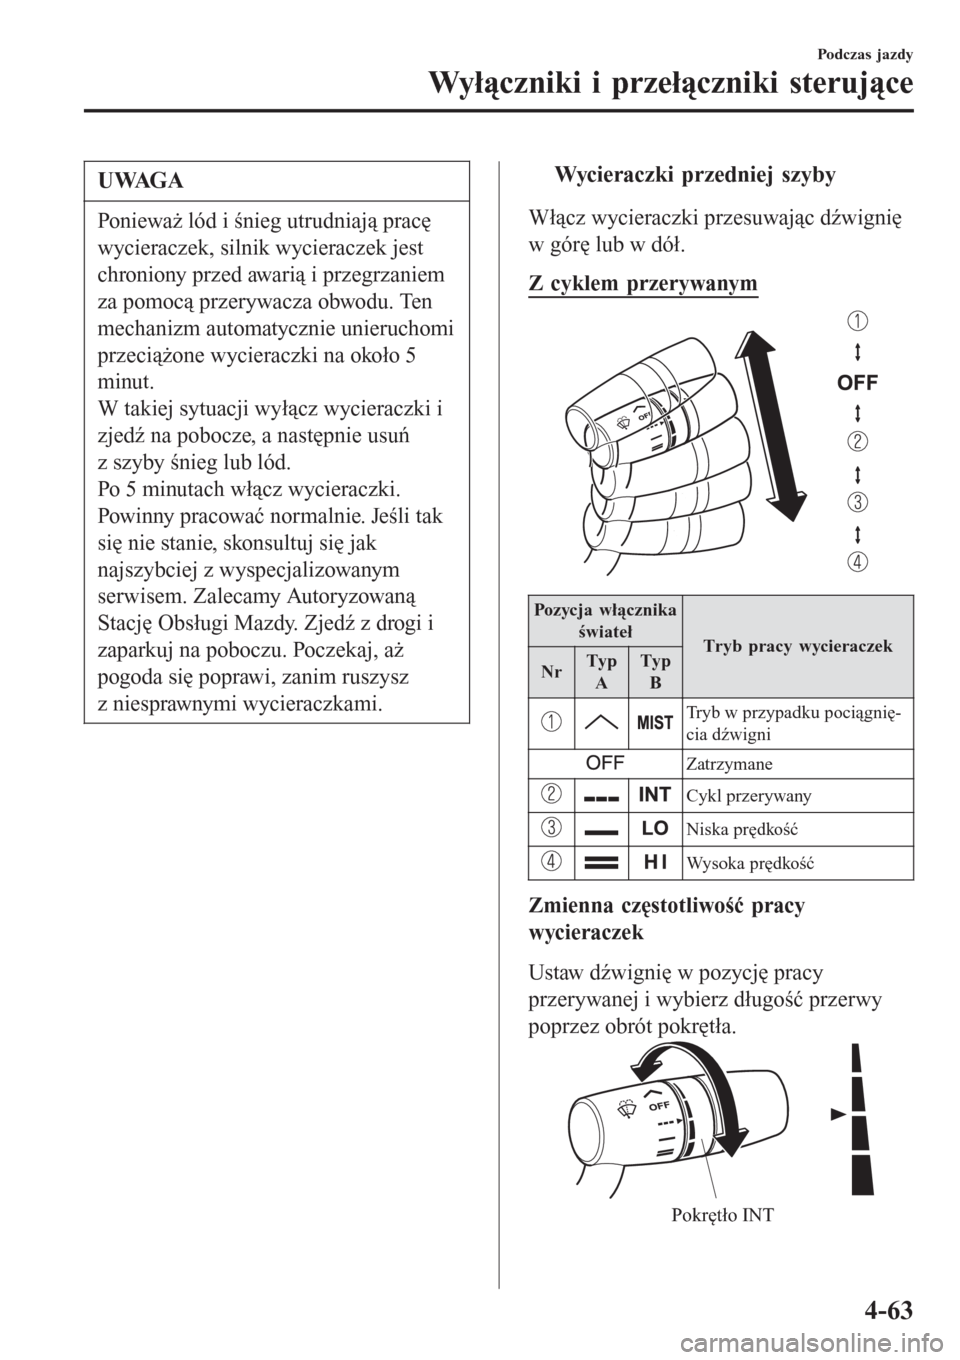 MAZDA MODEL MX-5 2015  Instrukcja Obsługi (in Polish) UWAGA
Ponieważ lód i śnieg utrudniają pracę
wycieraczek, silnik wycieraczek jest
chroniony przed awarią i przegrzaniem
za pomocą przerywacza obwodu. Ten
mechanizm automatycznie unieruchomi
prze